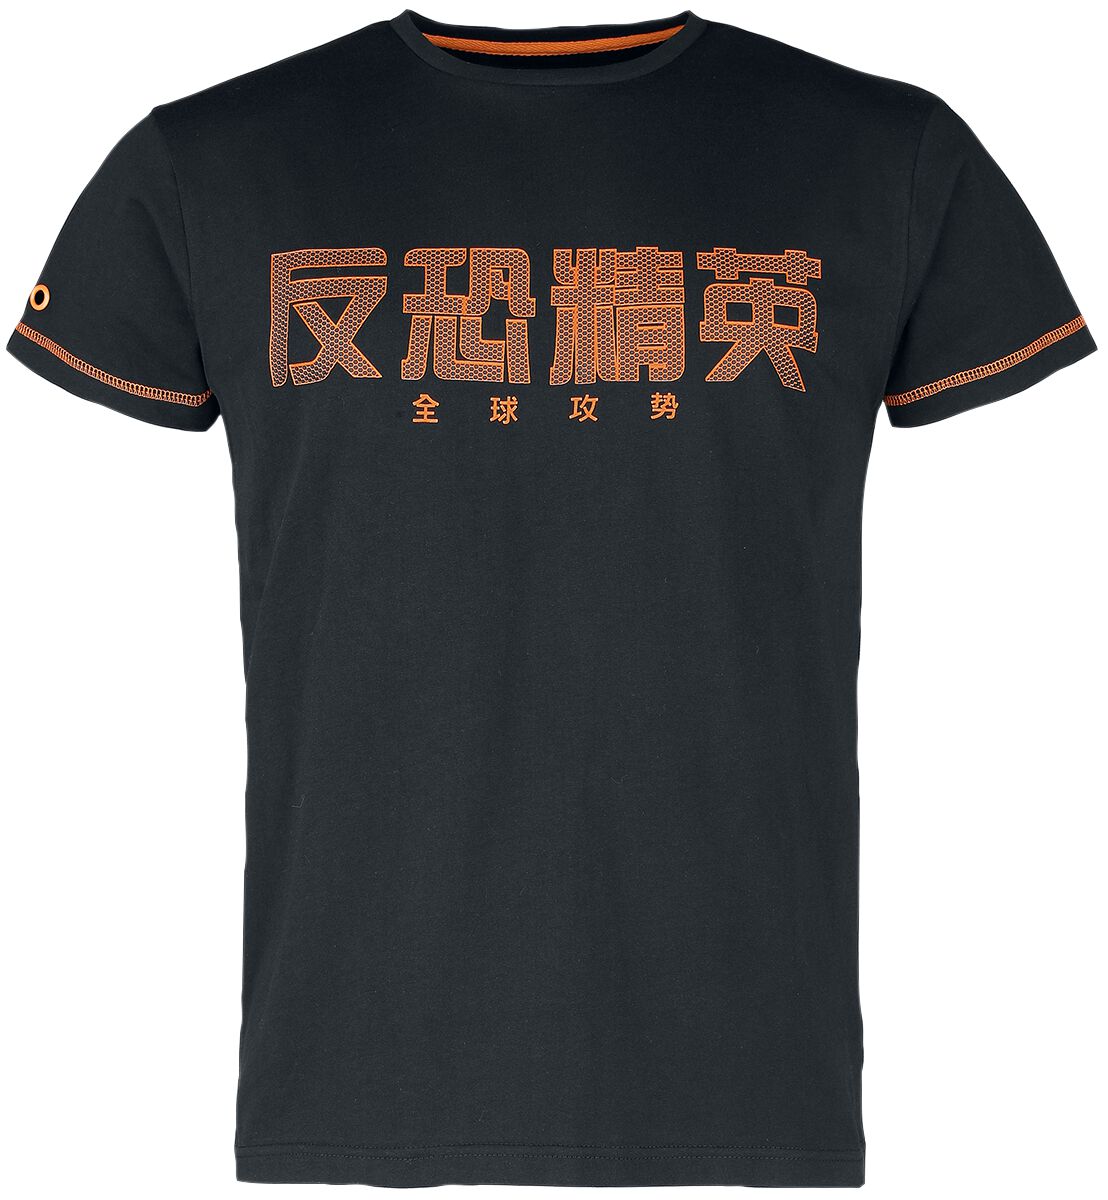 Counter-Strike - Gaming T-Shirt - Global Offensive - CS:GO - S bis M - für Männer - Größe S - schwarz  - EMP exklusives Merchandise!